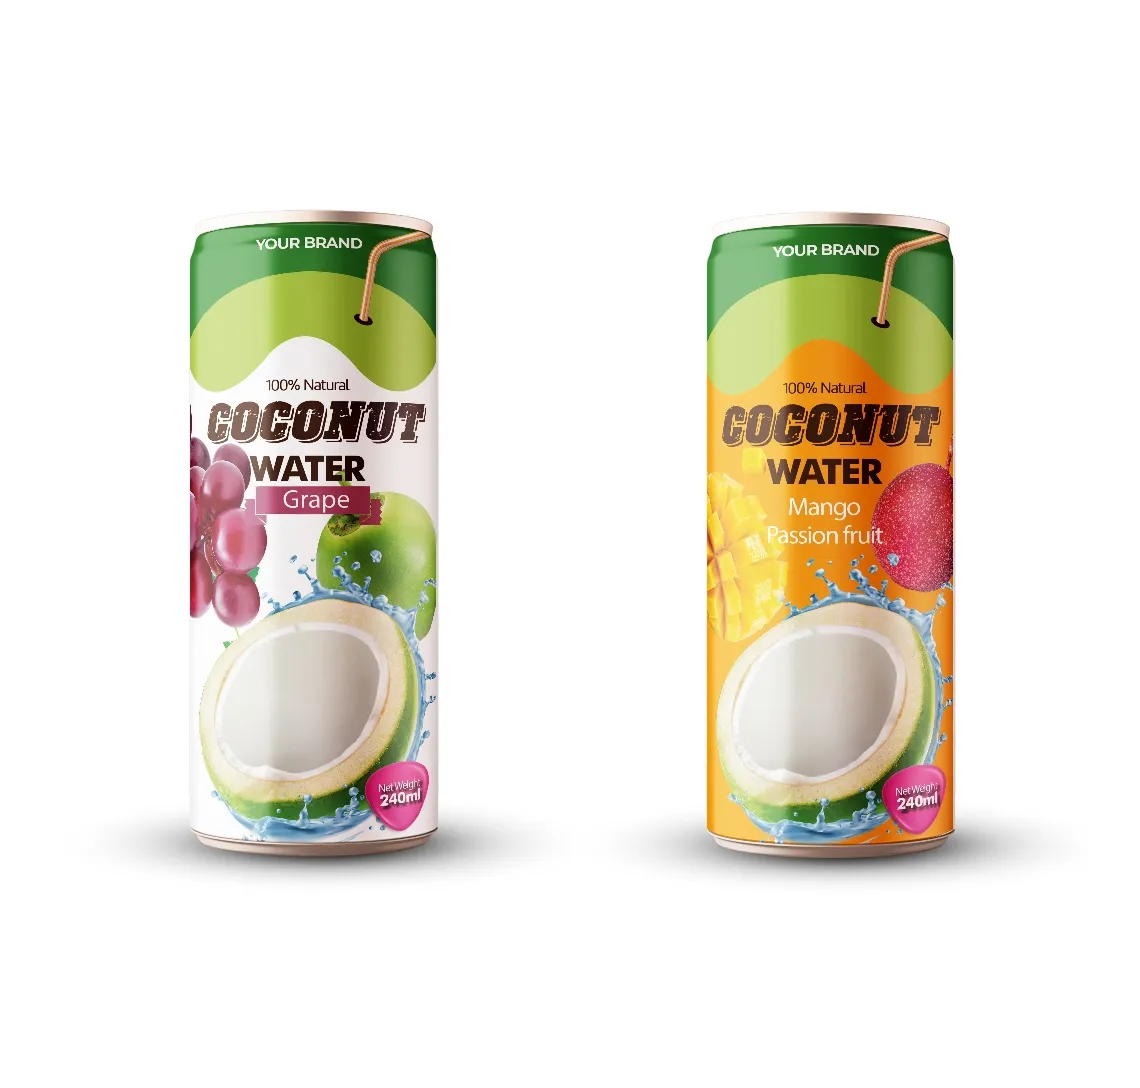 순수한 신선한 코코넛 부드러운 코코넛 물 건강 음료 식품 과일 250ml 국제 인증서와 함께 최고 품질의 코코넛 물